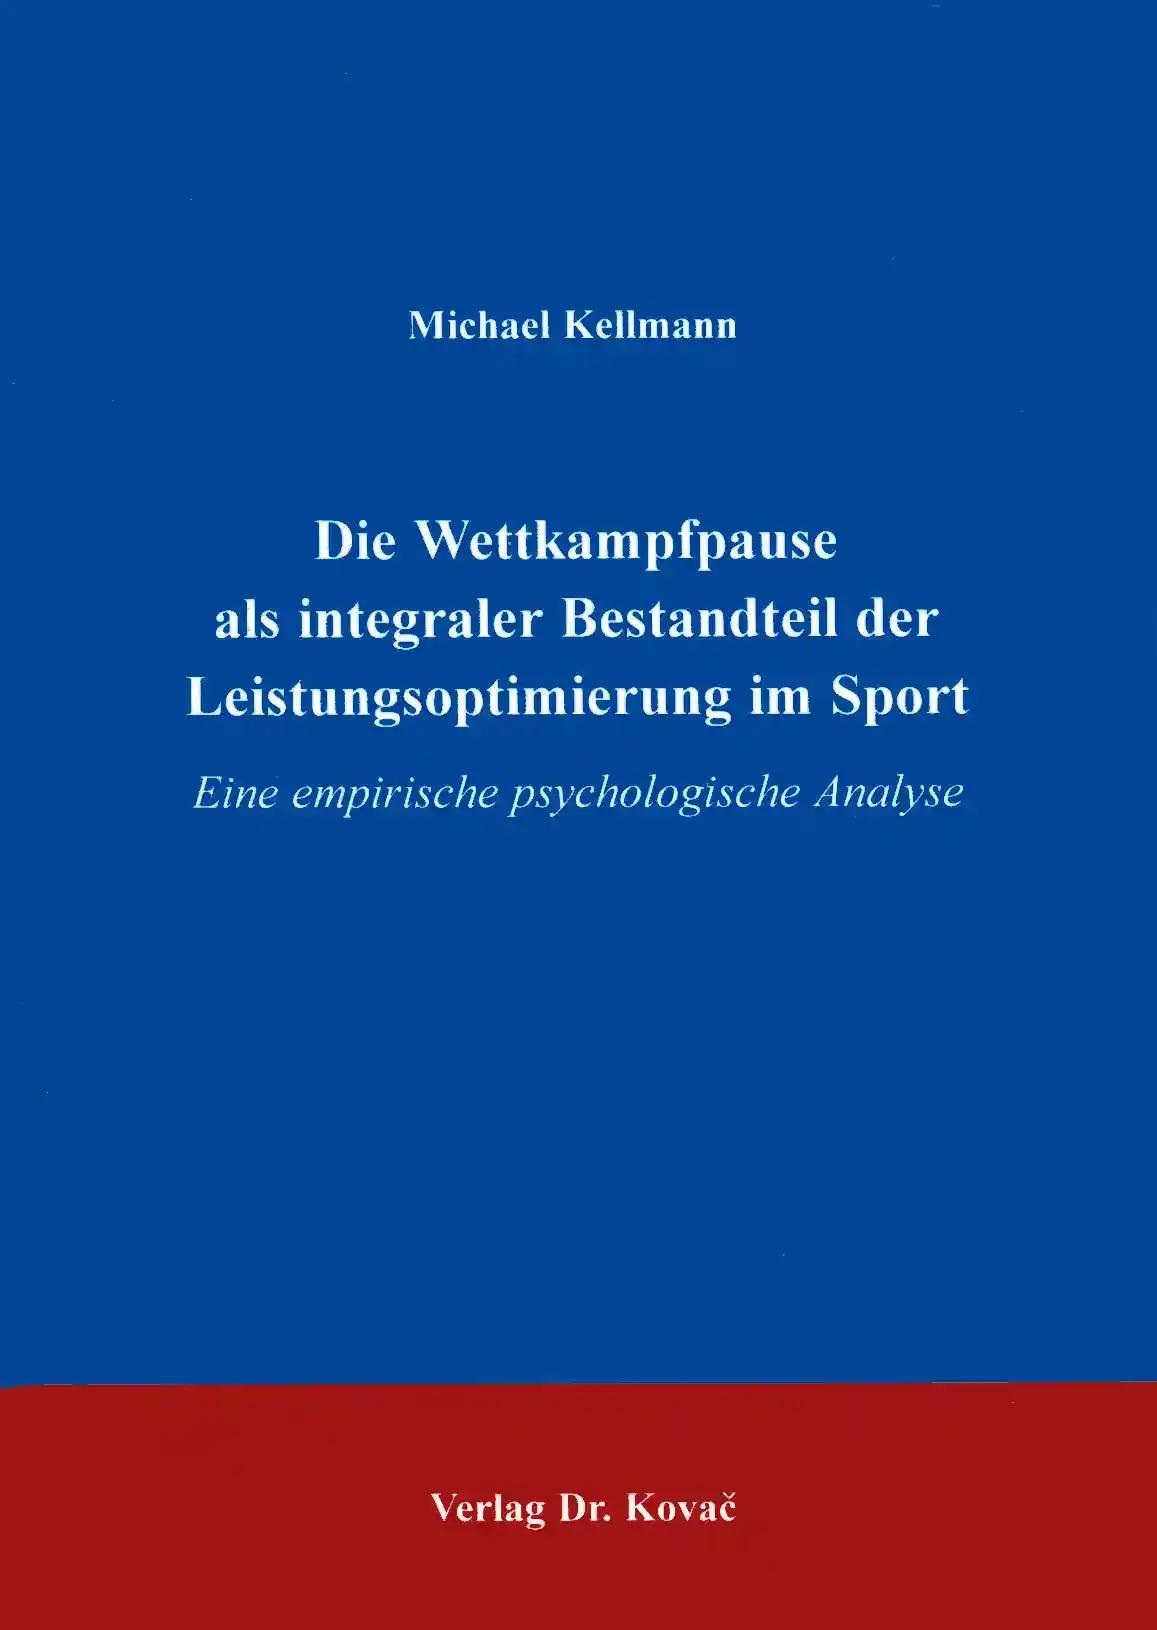 Die Wettkampfpause als integraler Bestandteil der Leistungsoptimierung im Sport, Eine empirische psychologische Analyse - Michael Kellmann